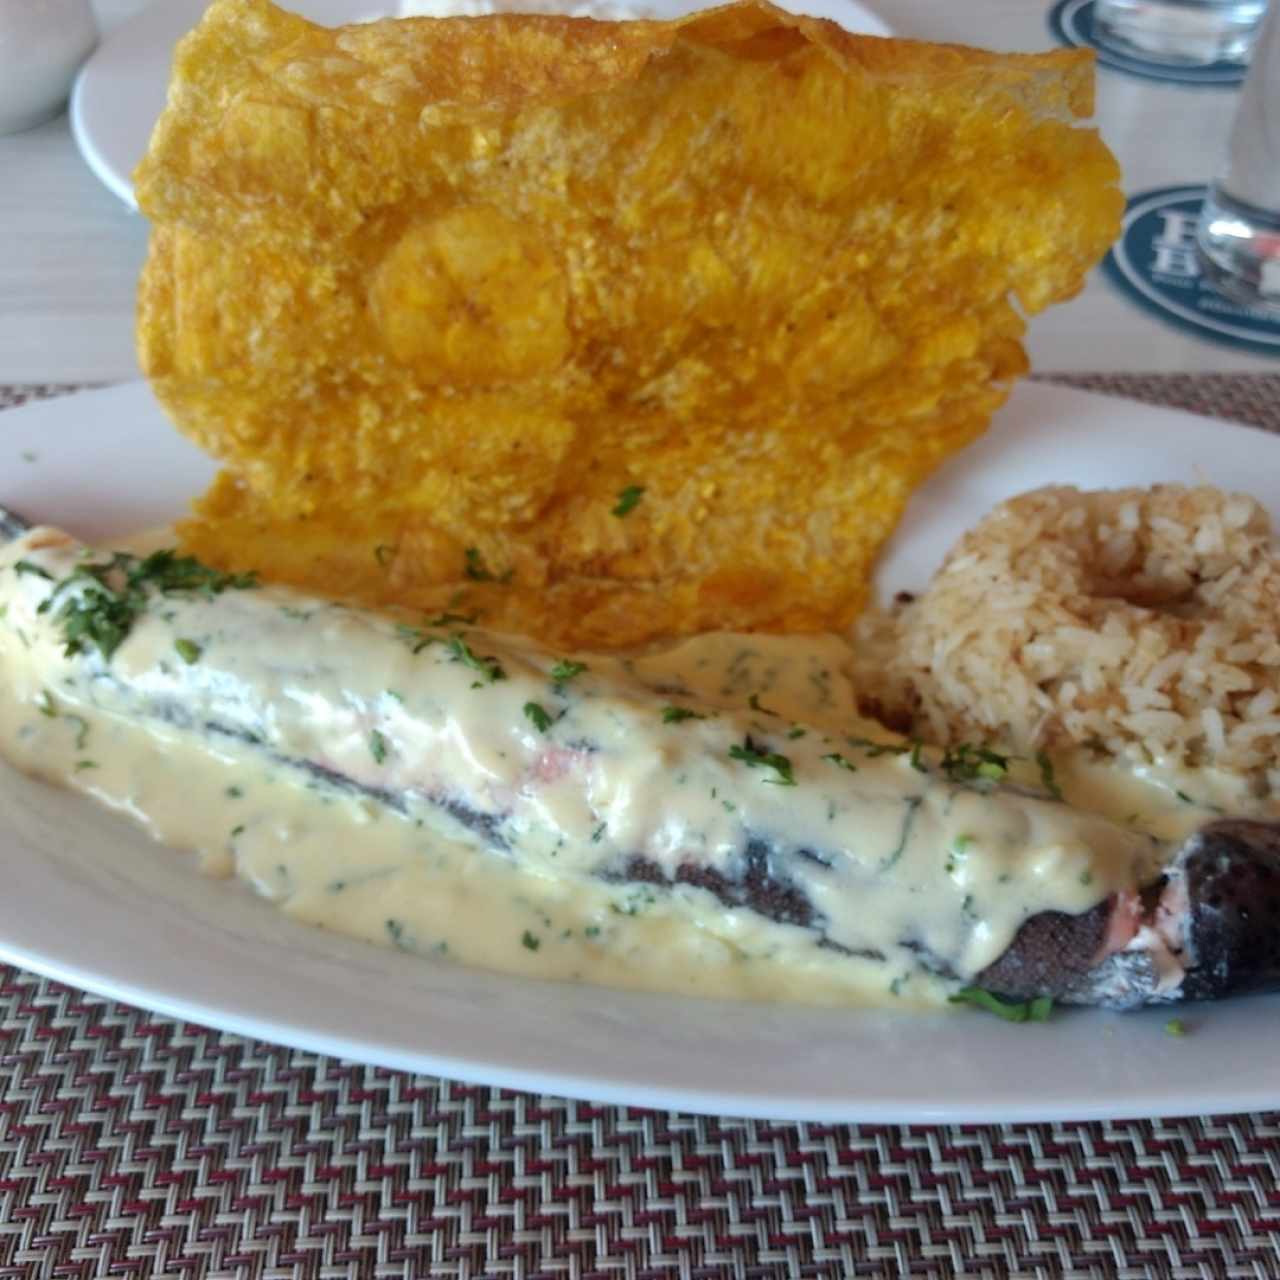 Trucha rellena con mariscos, arroz con coco y tostada valluna.